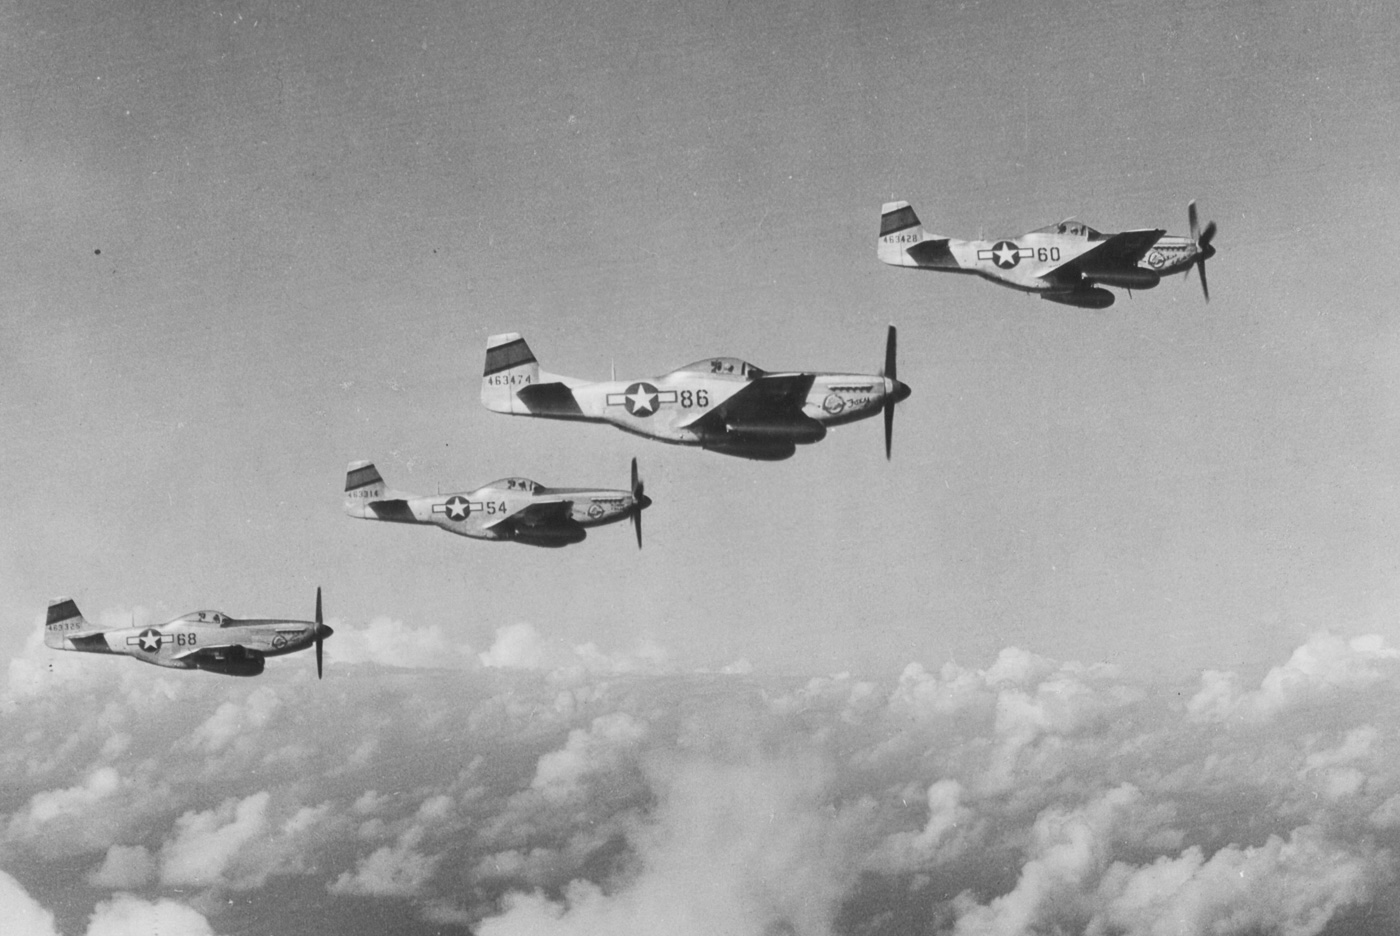 p-51 mustangs escorting b-29 bombers over iwo jima